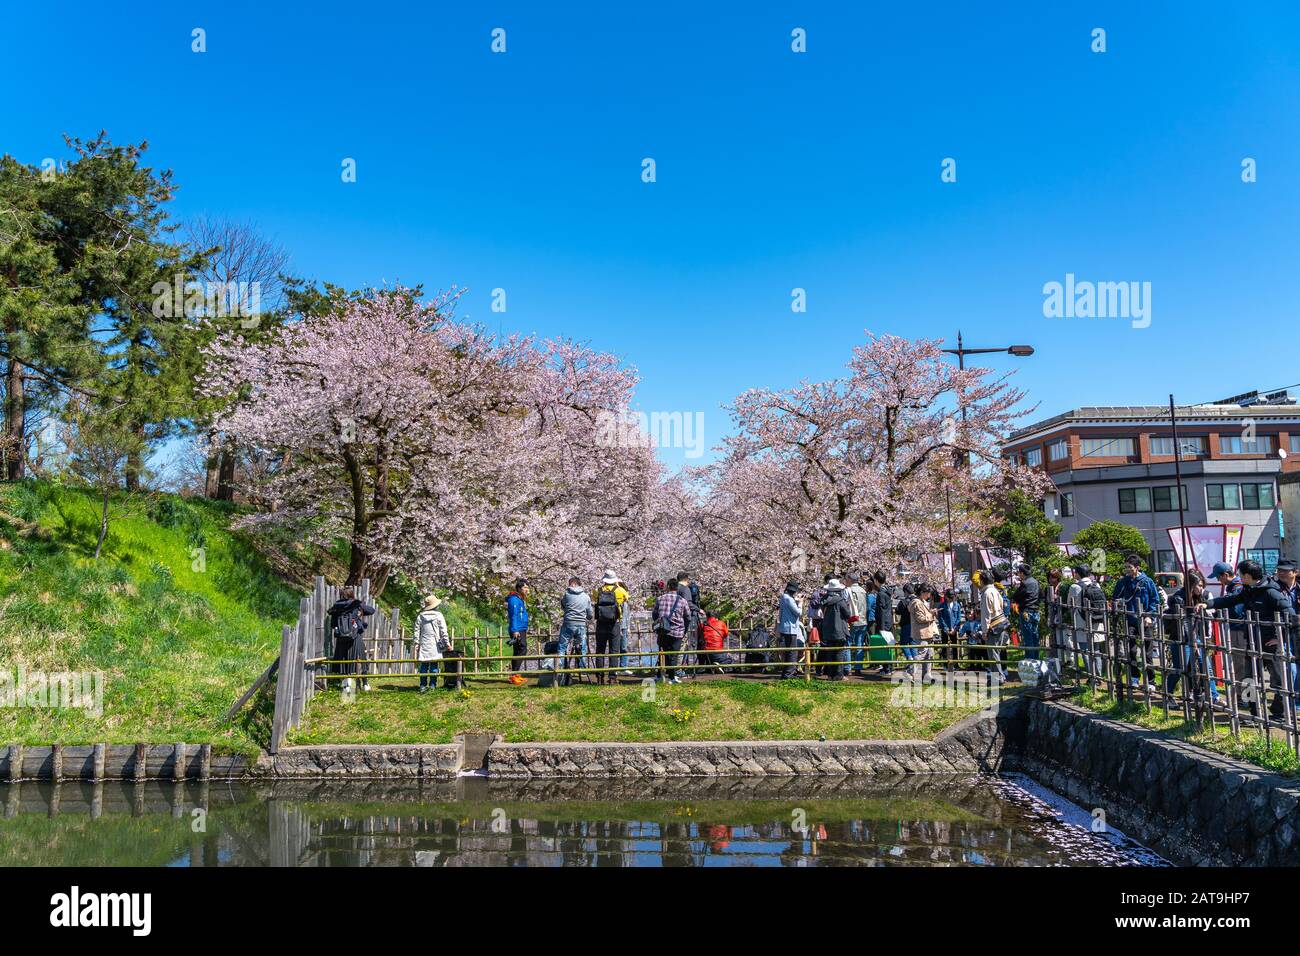 Le festival des cerisiers en fleurs du parc Hirosaki Matsuri est le jour ensoleillé de la saison de printemps. Les visiteurs peuvent admirer des fleurs roses en pleine fleur Banque D'Images